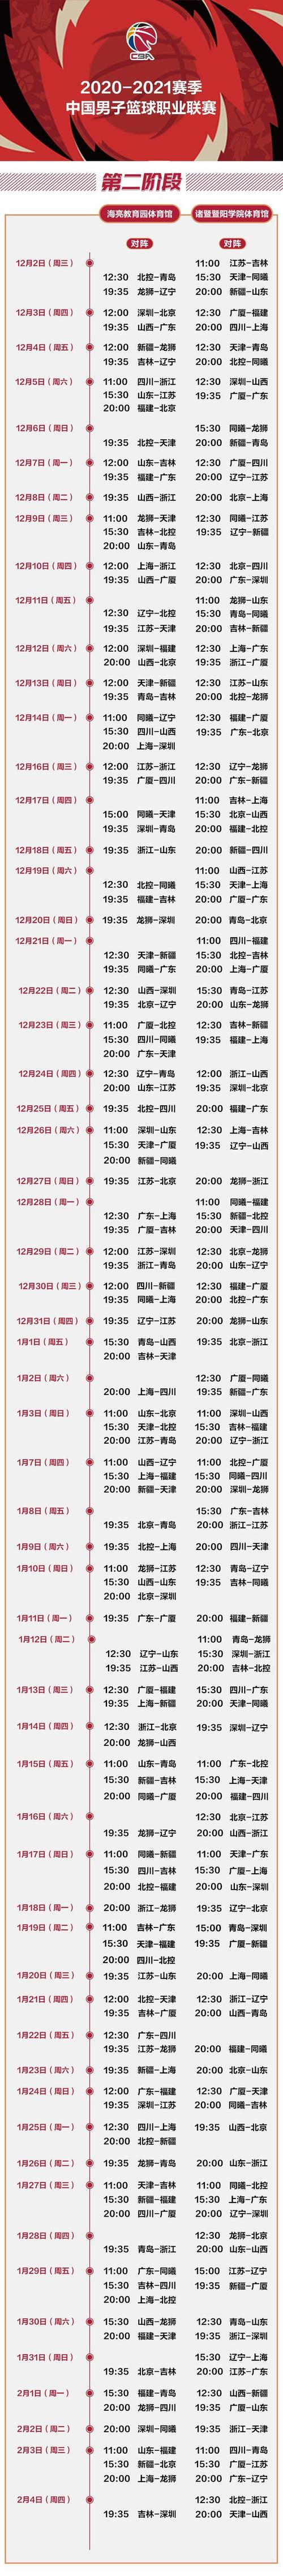 中国男篮世预赛赛程时间